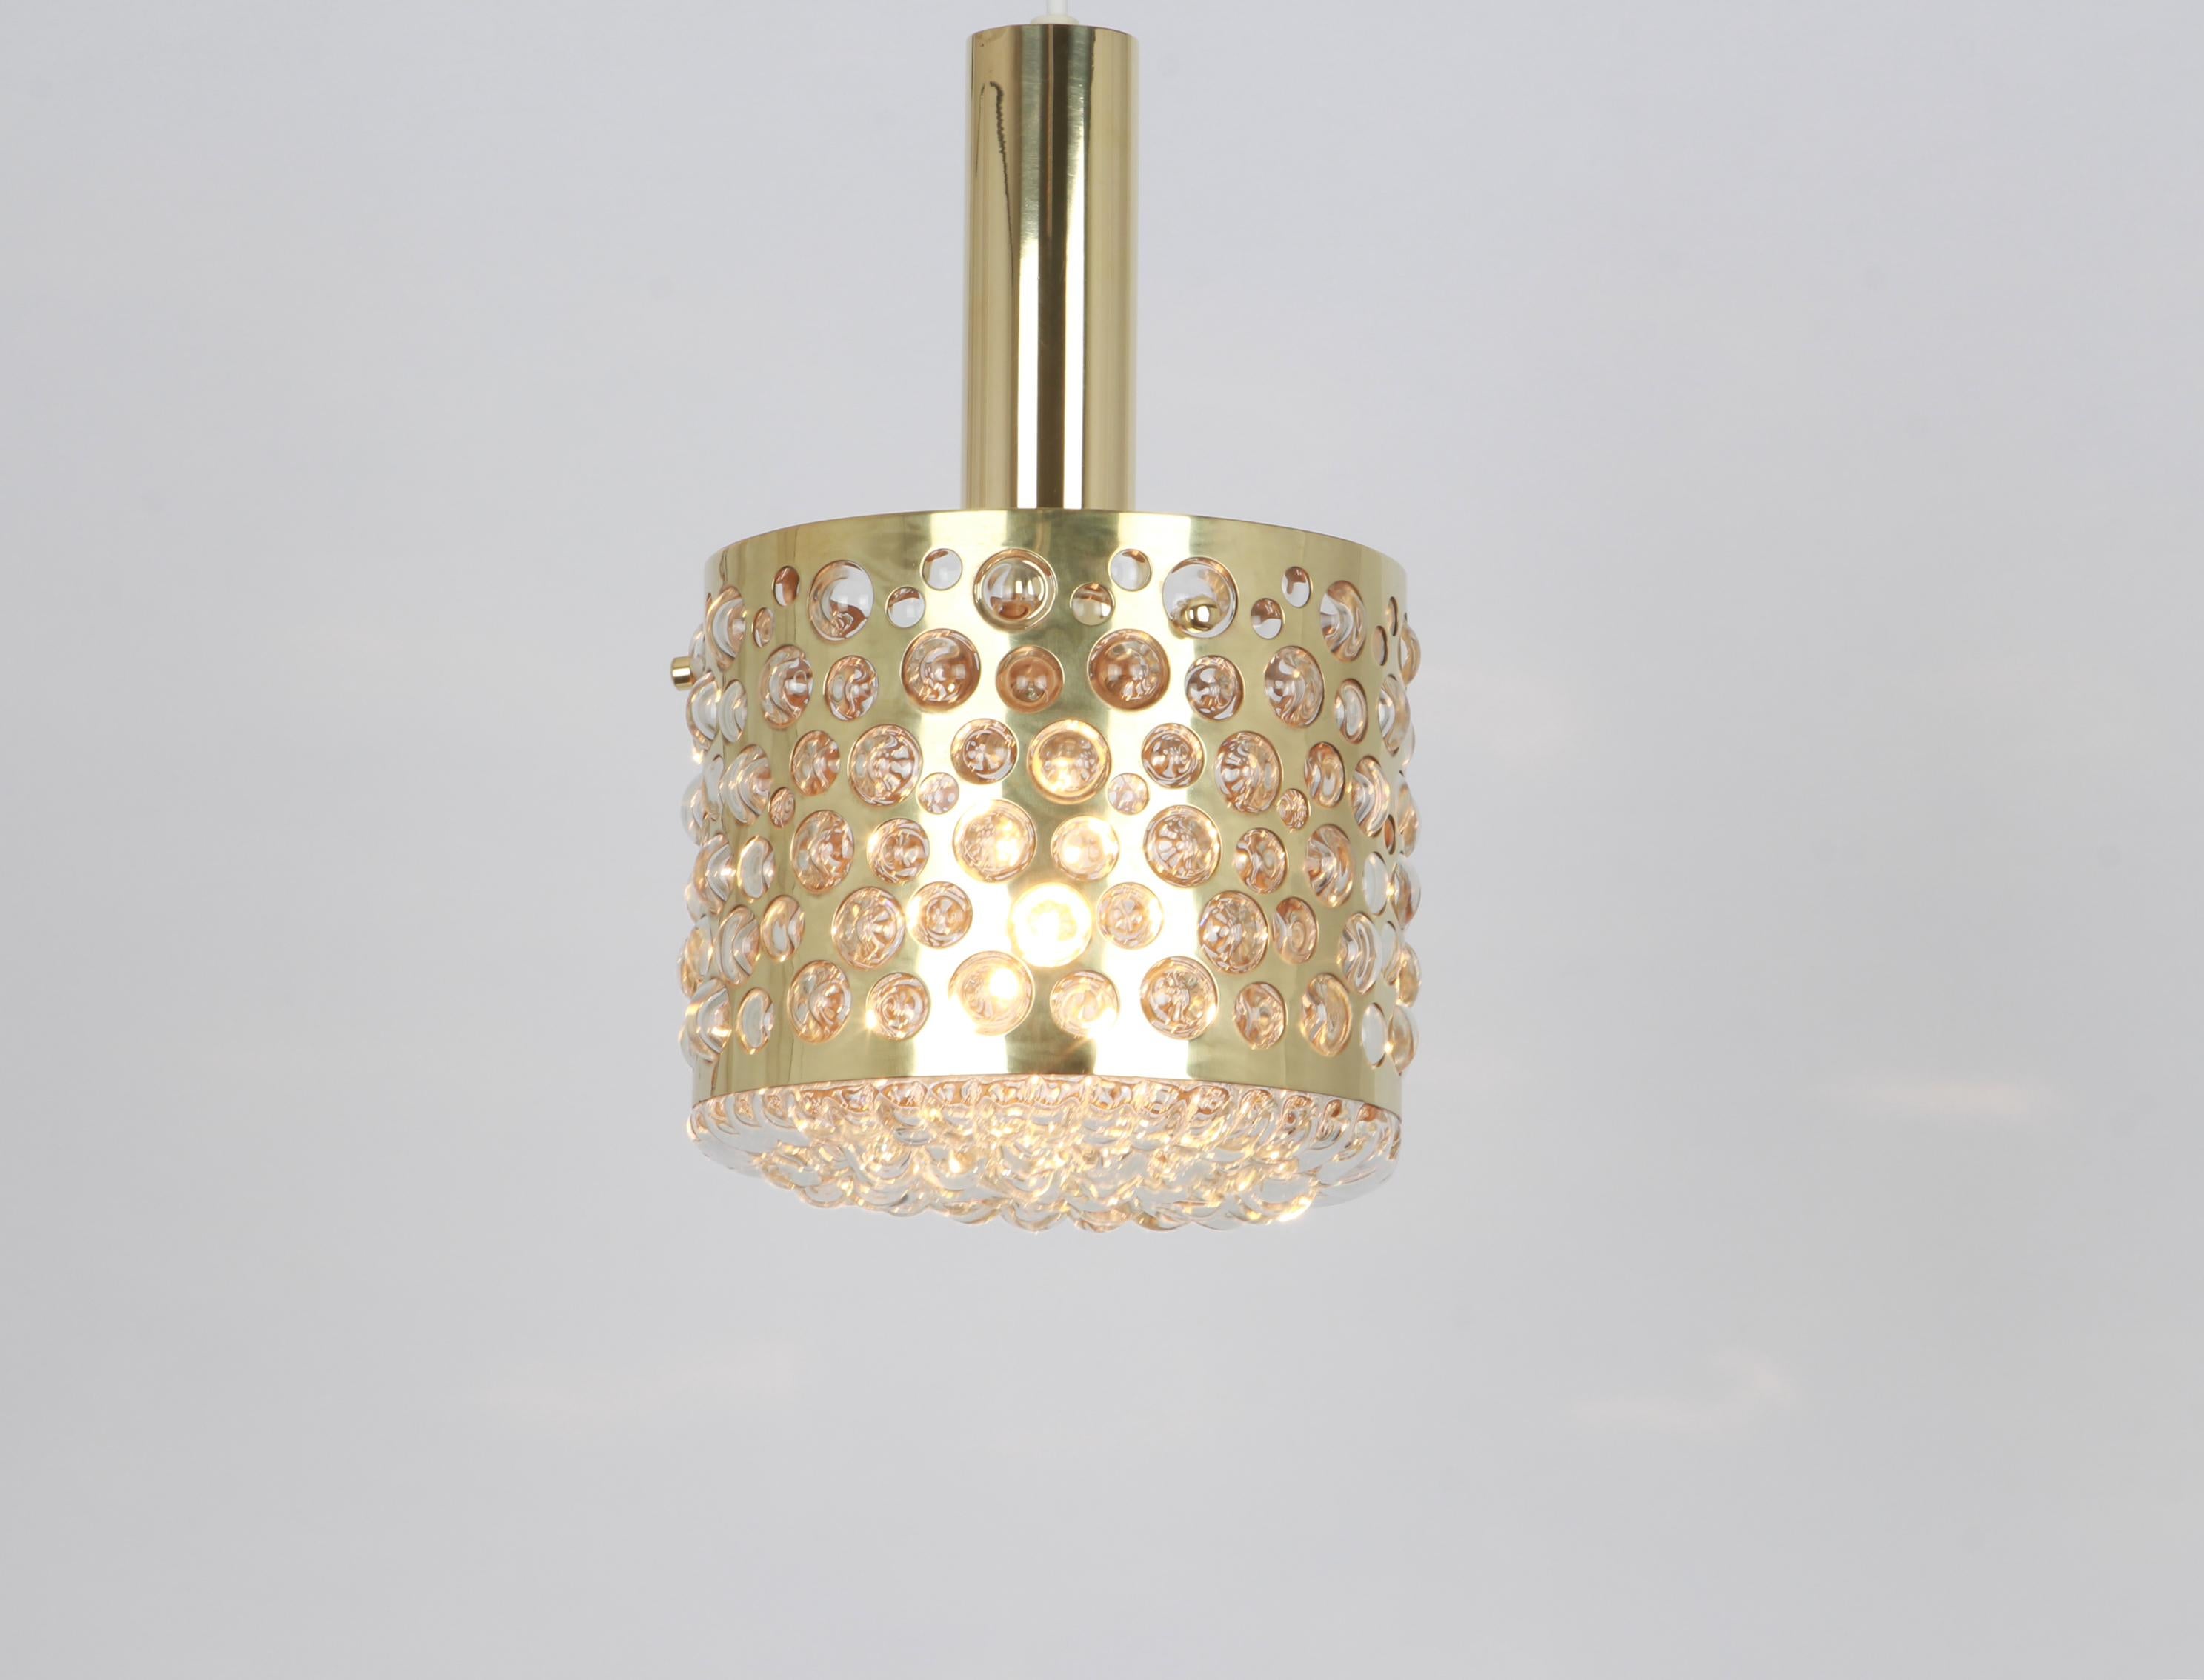 Austrian Petite Pendant Light with Aged Brass Glass by Rupert Nikoll, Austria, 1960s